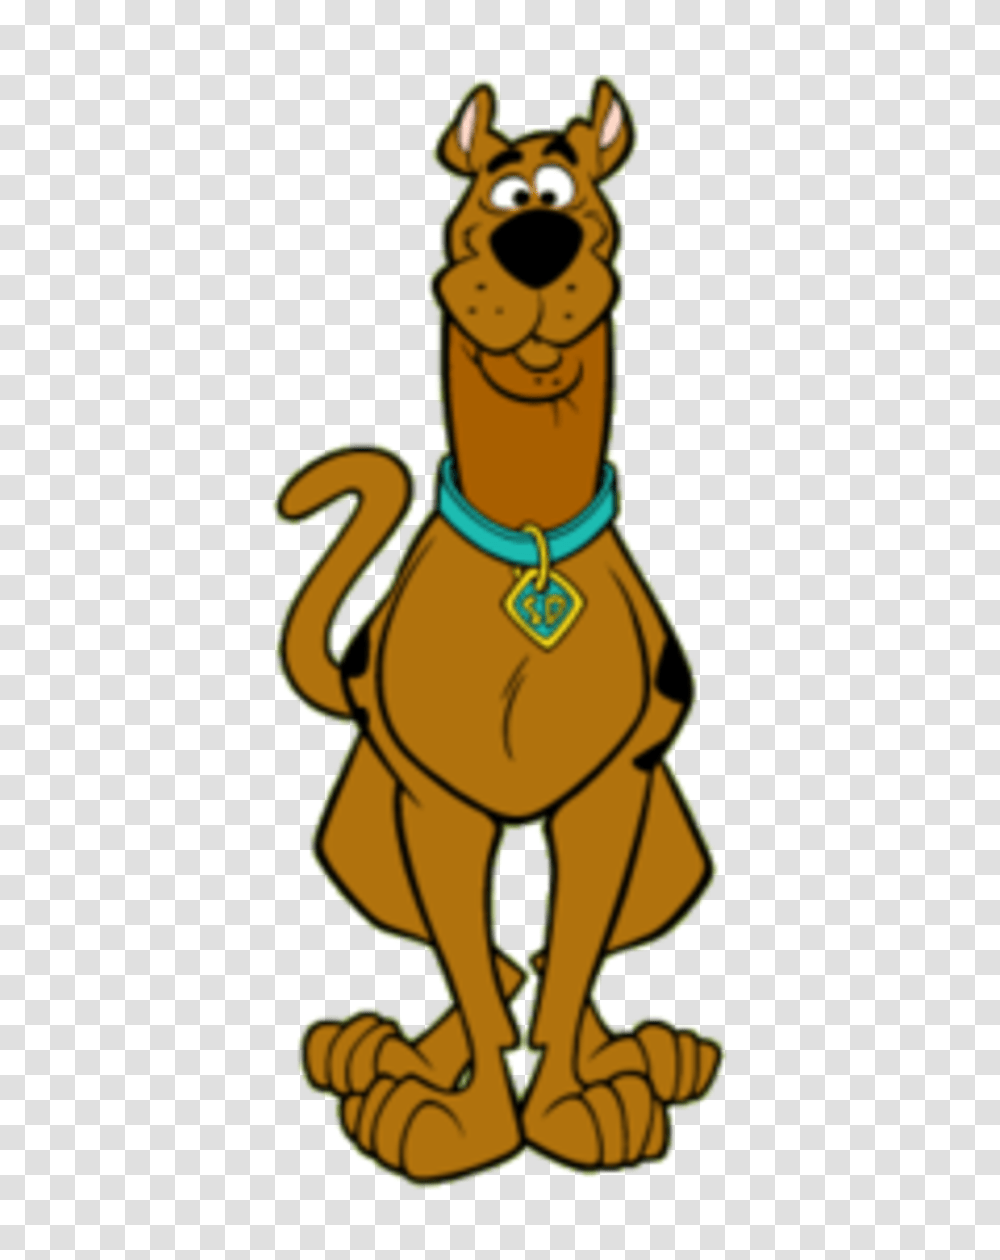 Good Morning Clipart Scooby Doo, Animal, Mammal, Pet, Cat Transparent Png